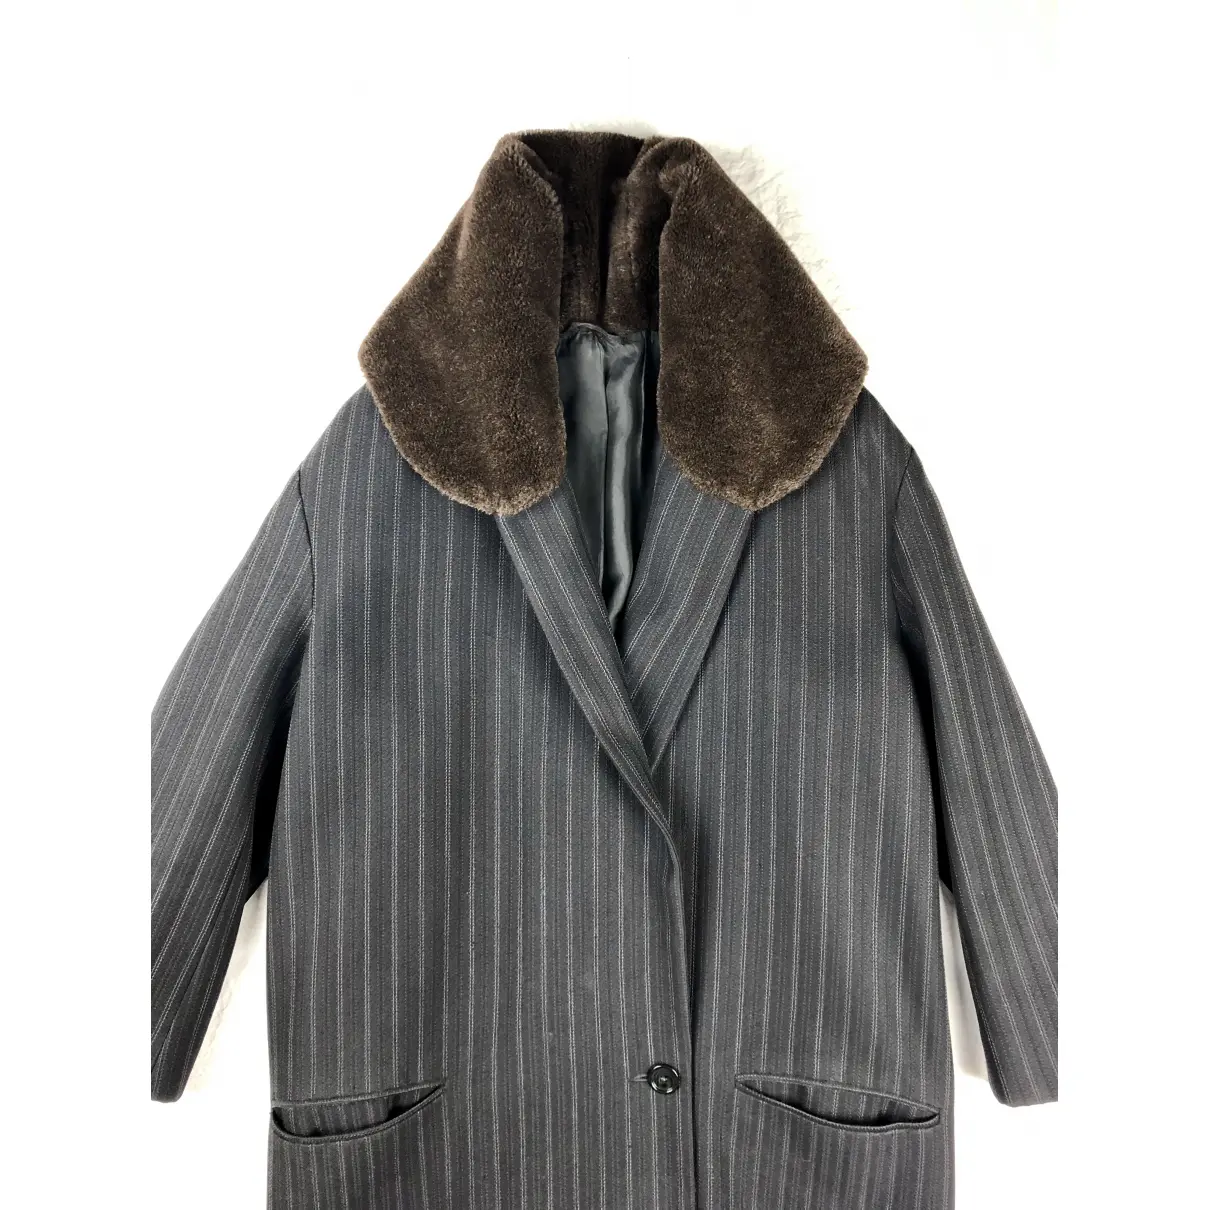 Wool coat Romeo Gigli - Vintage